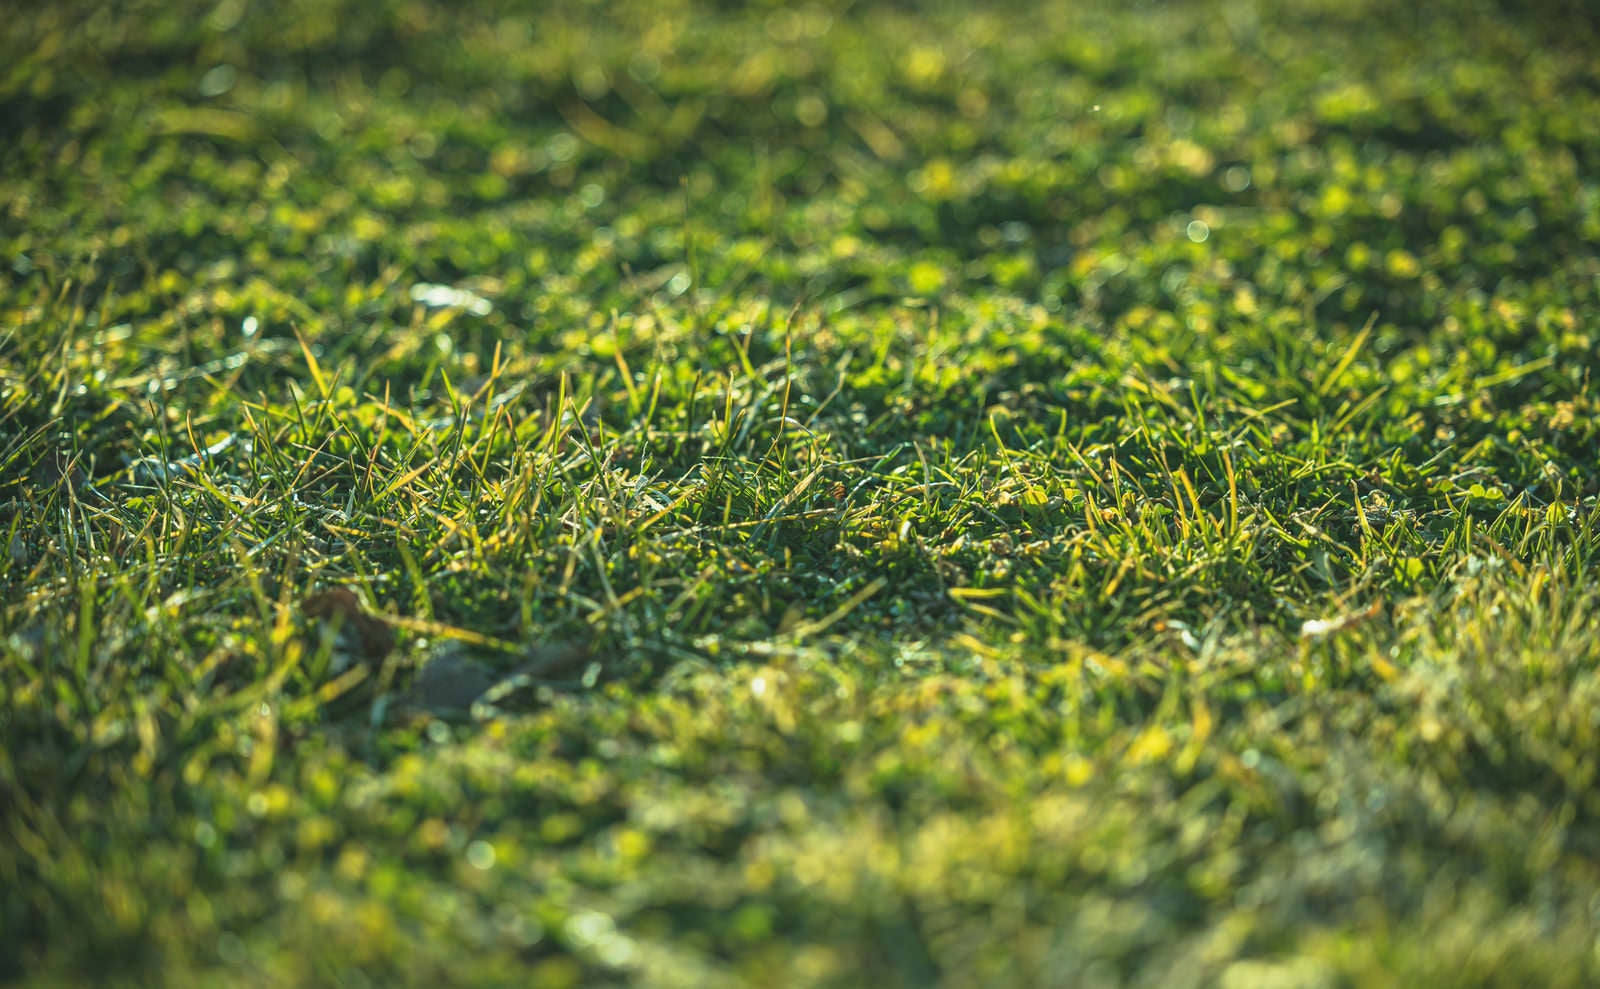 「天神岬の緑色の芝生」の写真